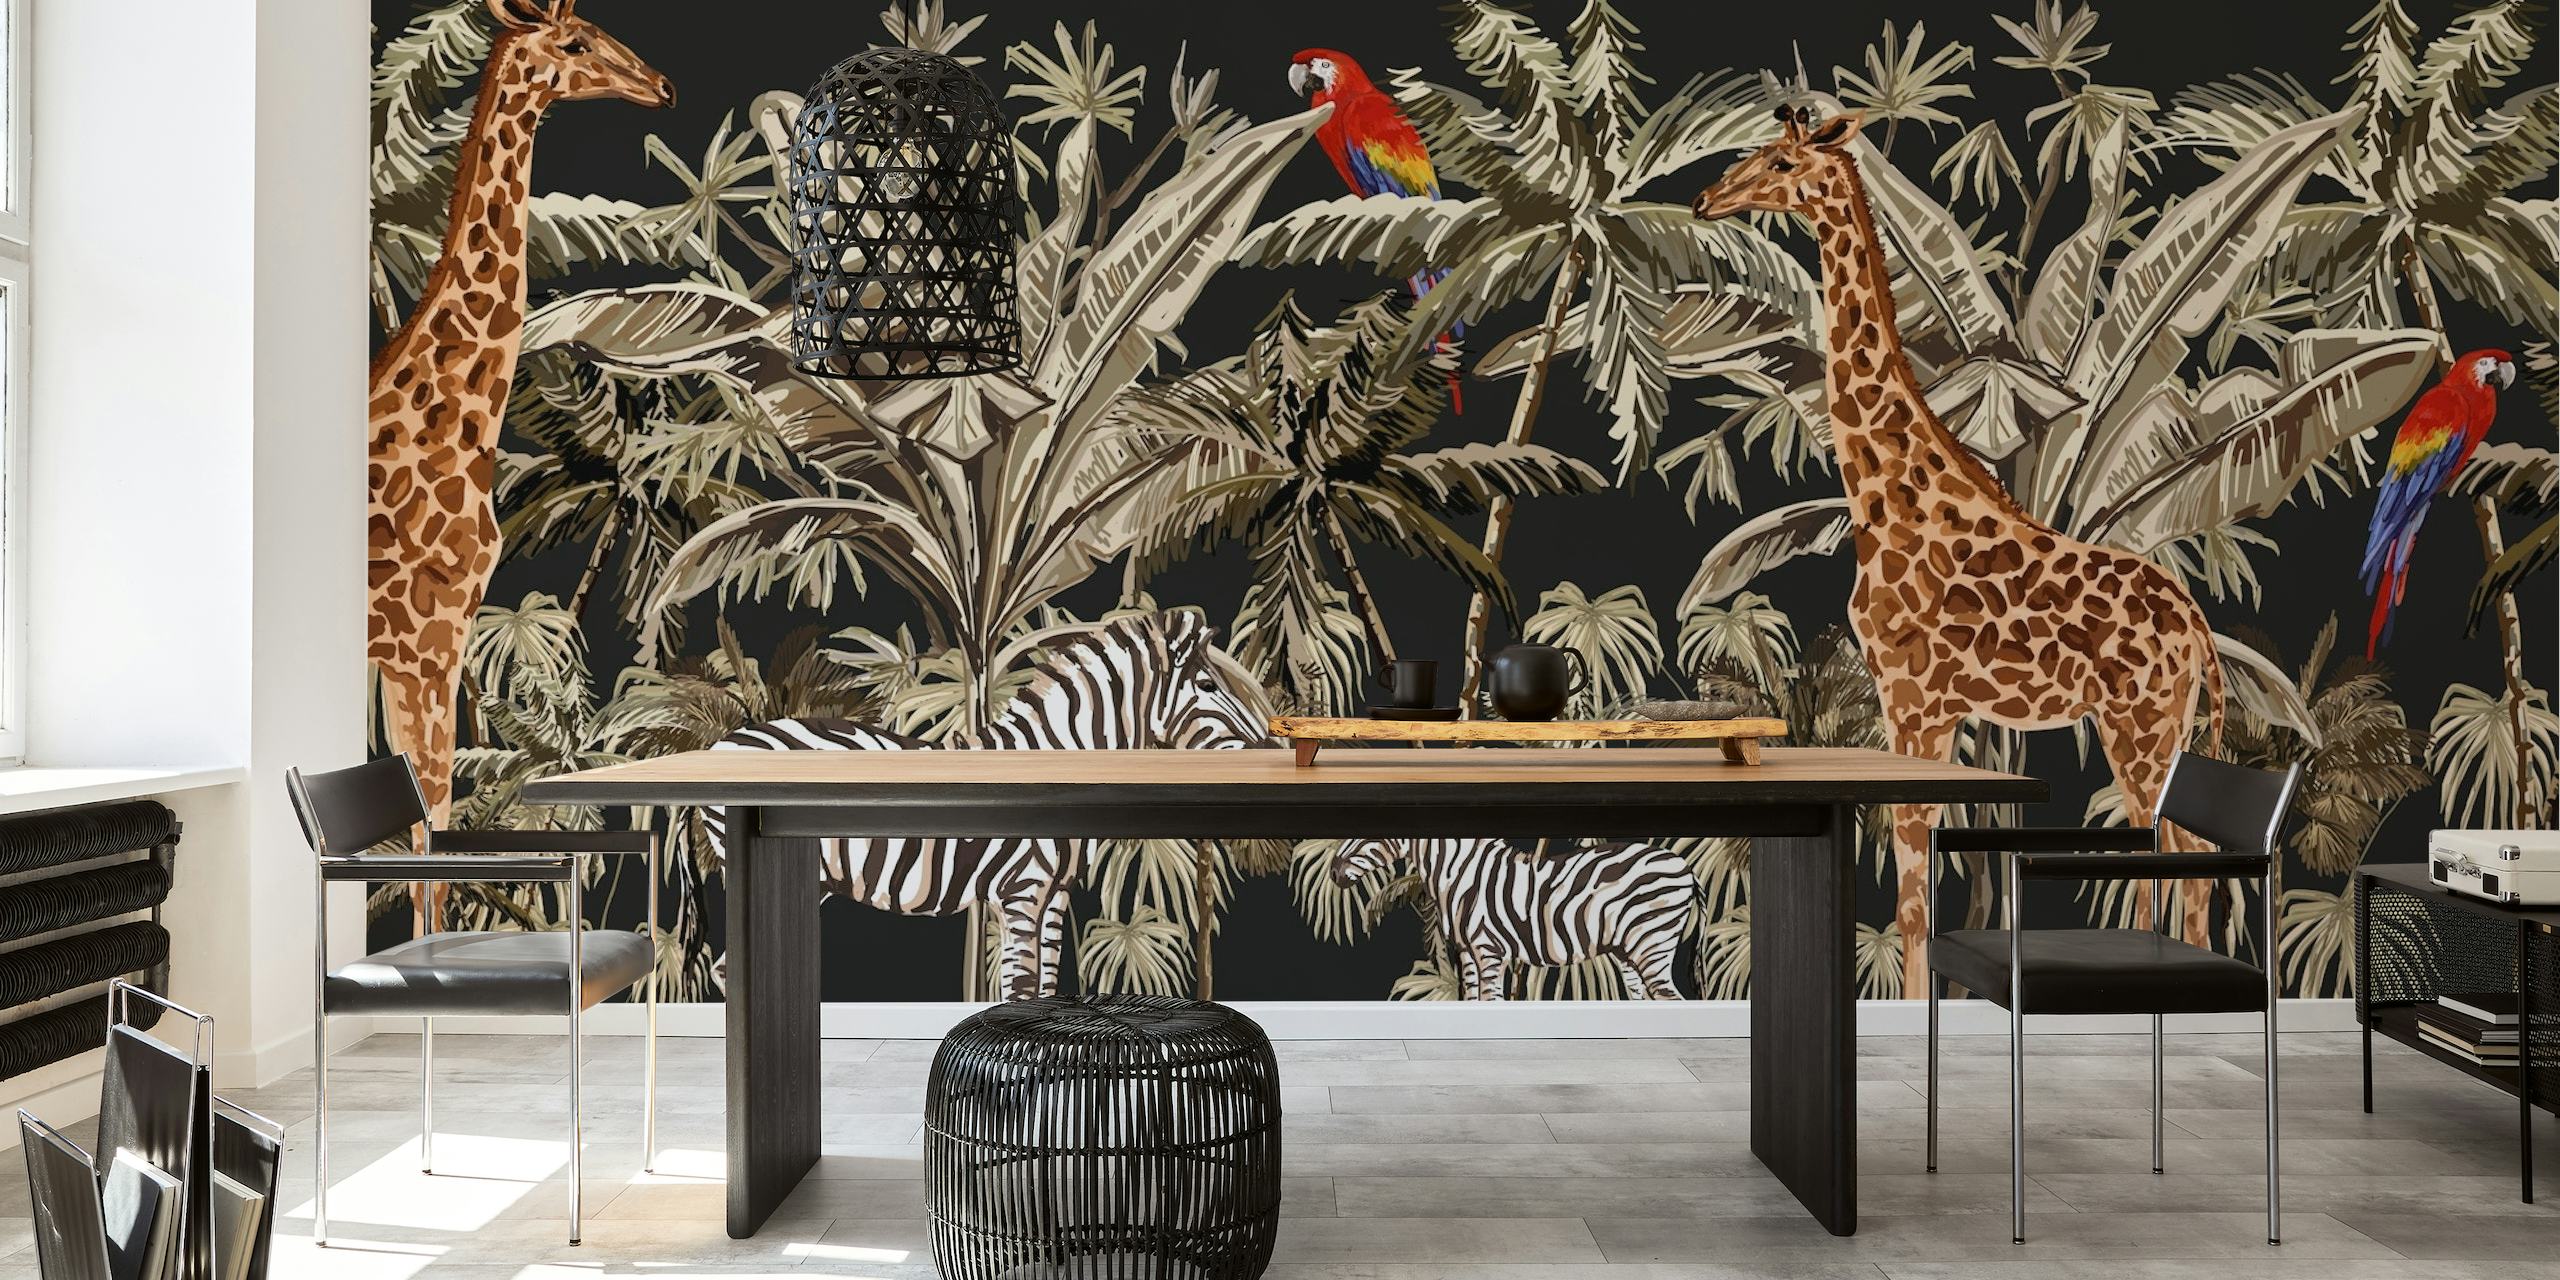 Fototapet av giraffer och zebror bland palmer på en svart bakgrund